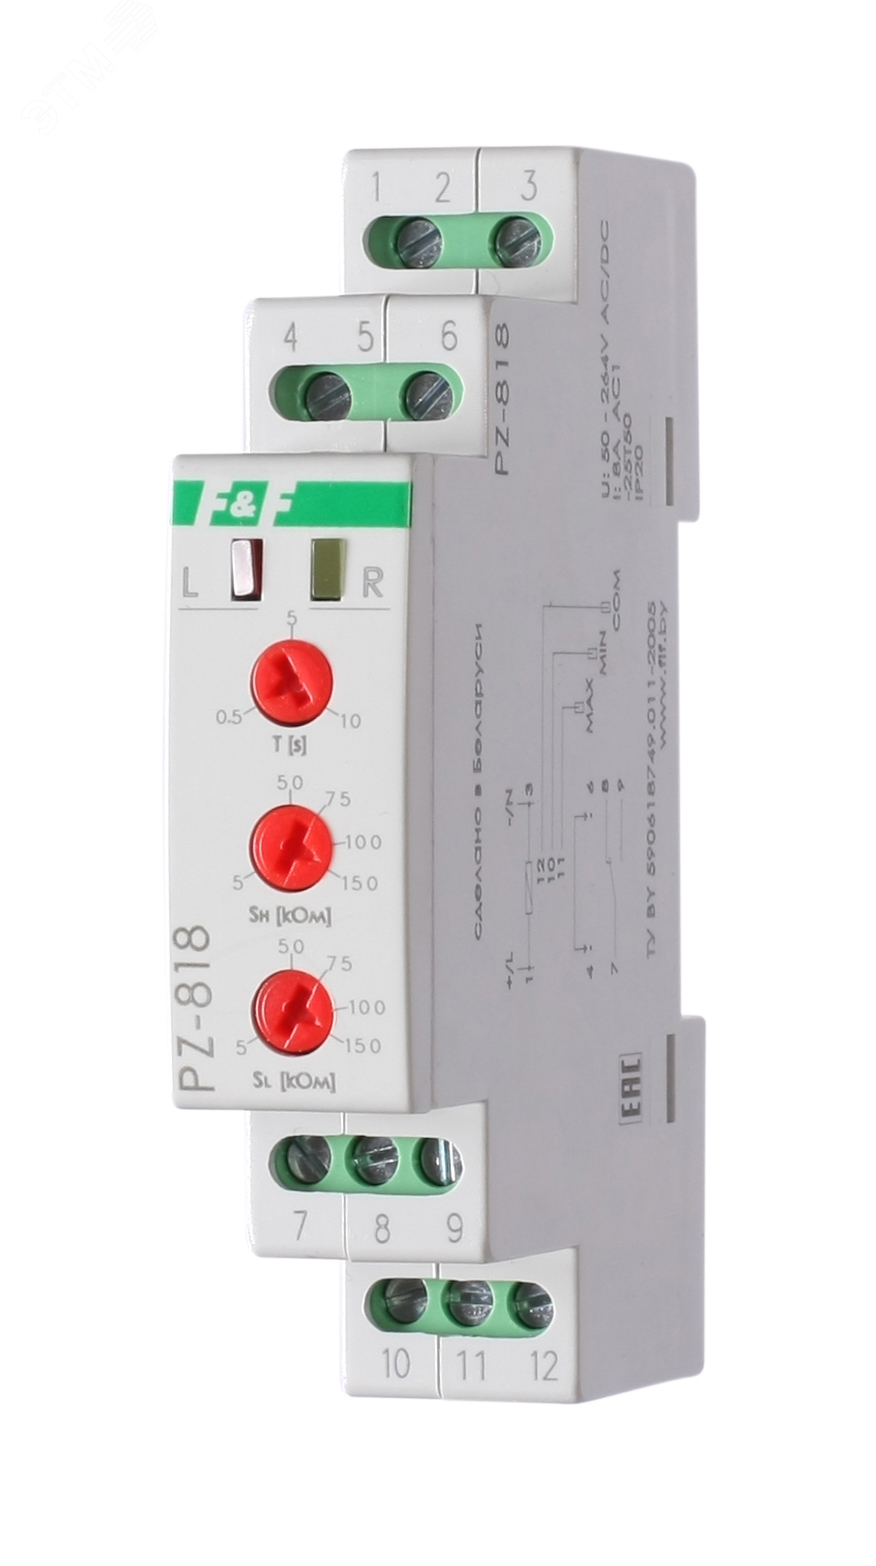 Реле контроля PZ-818 уровня жидкости без датчиков EA08.001.009 Евроавтоматика F&F